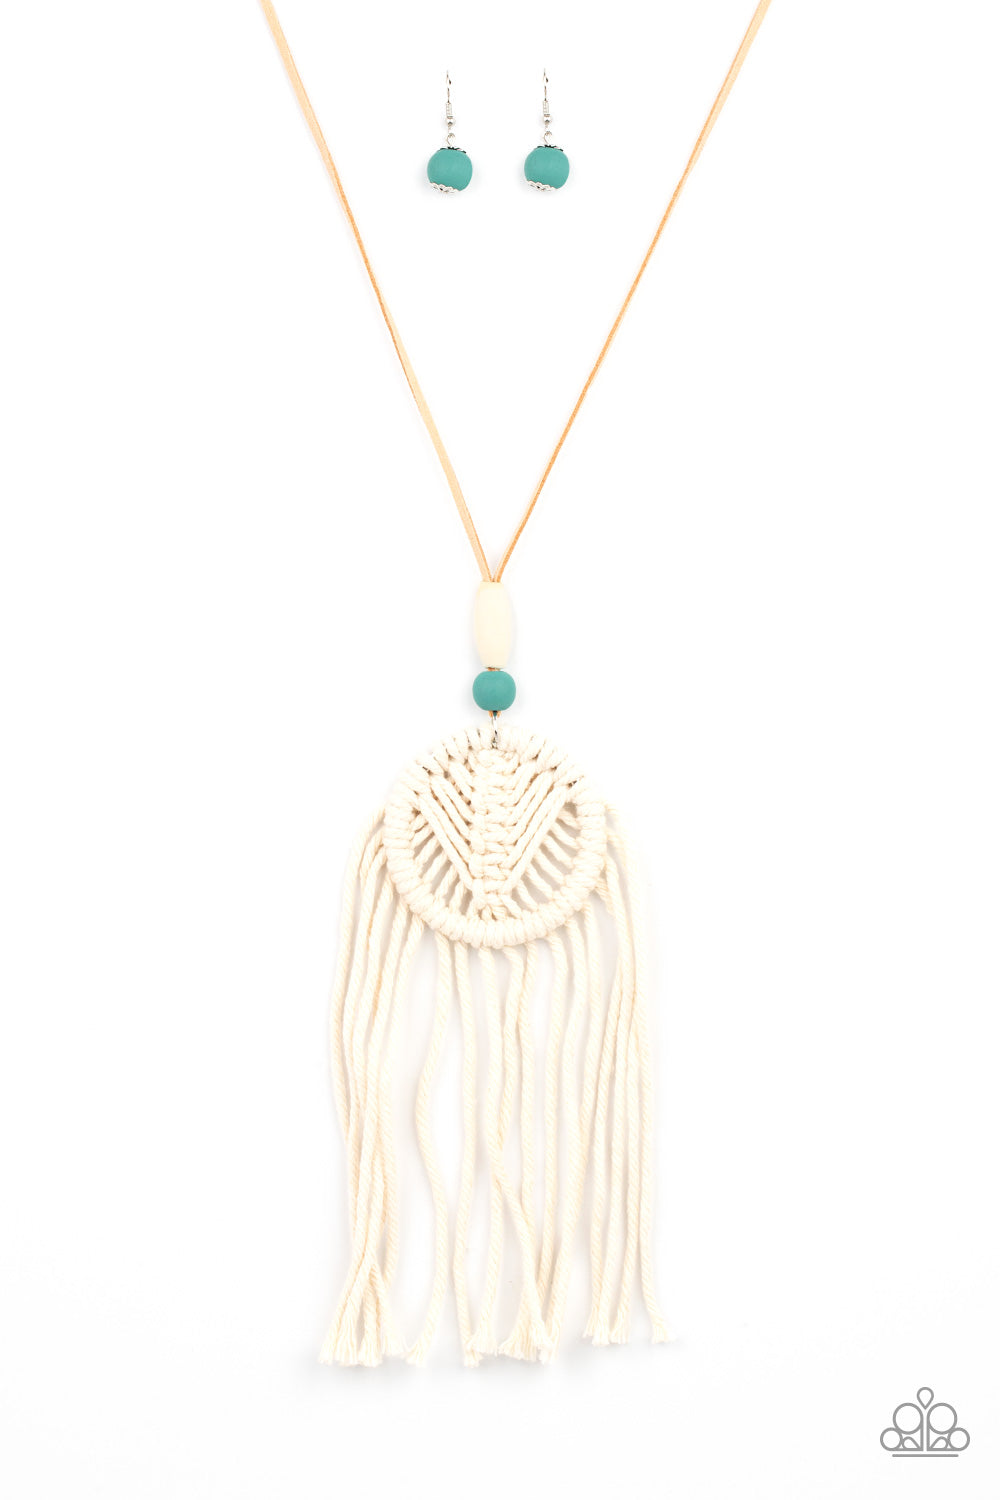 Desert Dreamscape - Blue Stone & White Wood Necklace Set - Princess Glam Shop